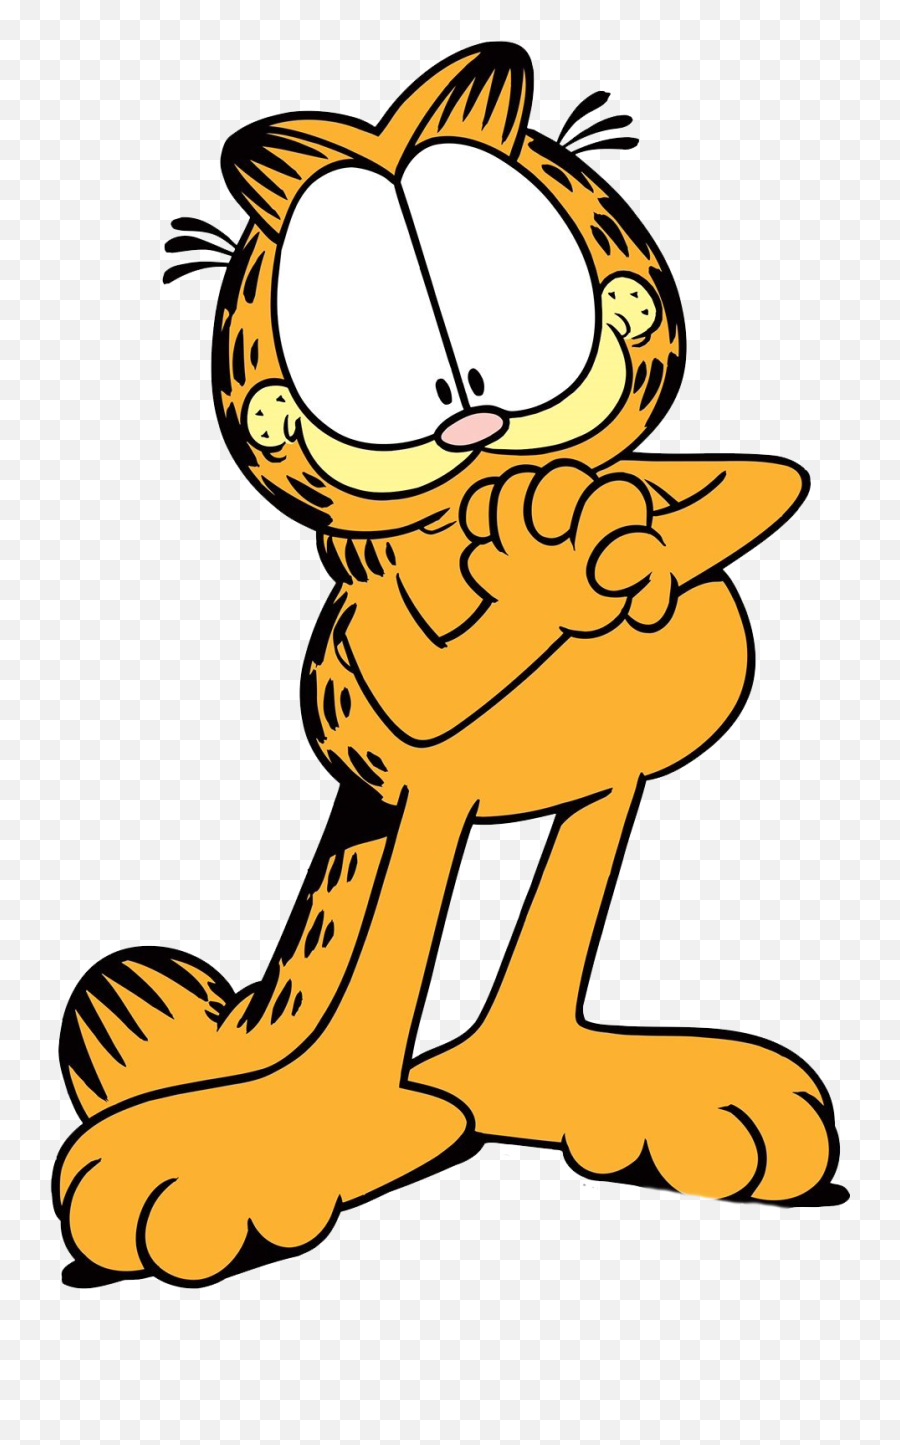 Garfield Transparent Background - Garfield Transparent Emoji,Transparent Background Image